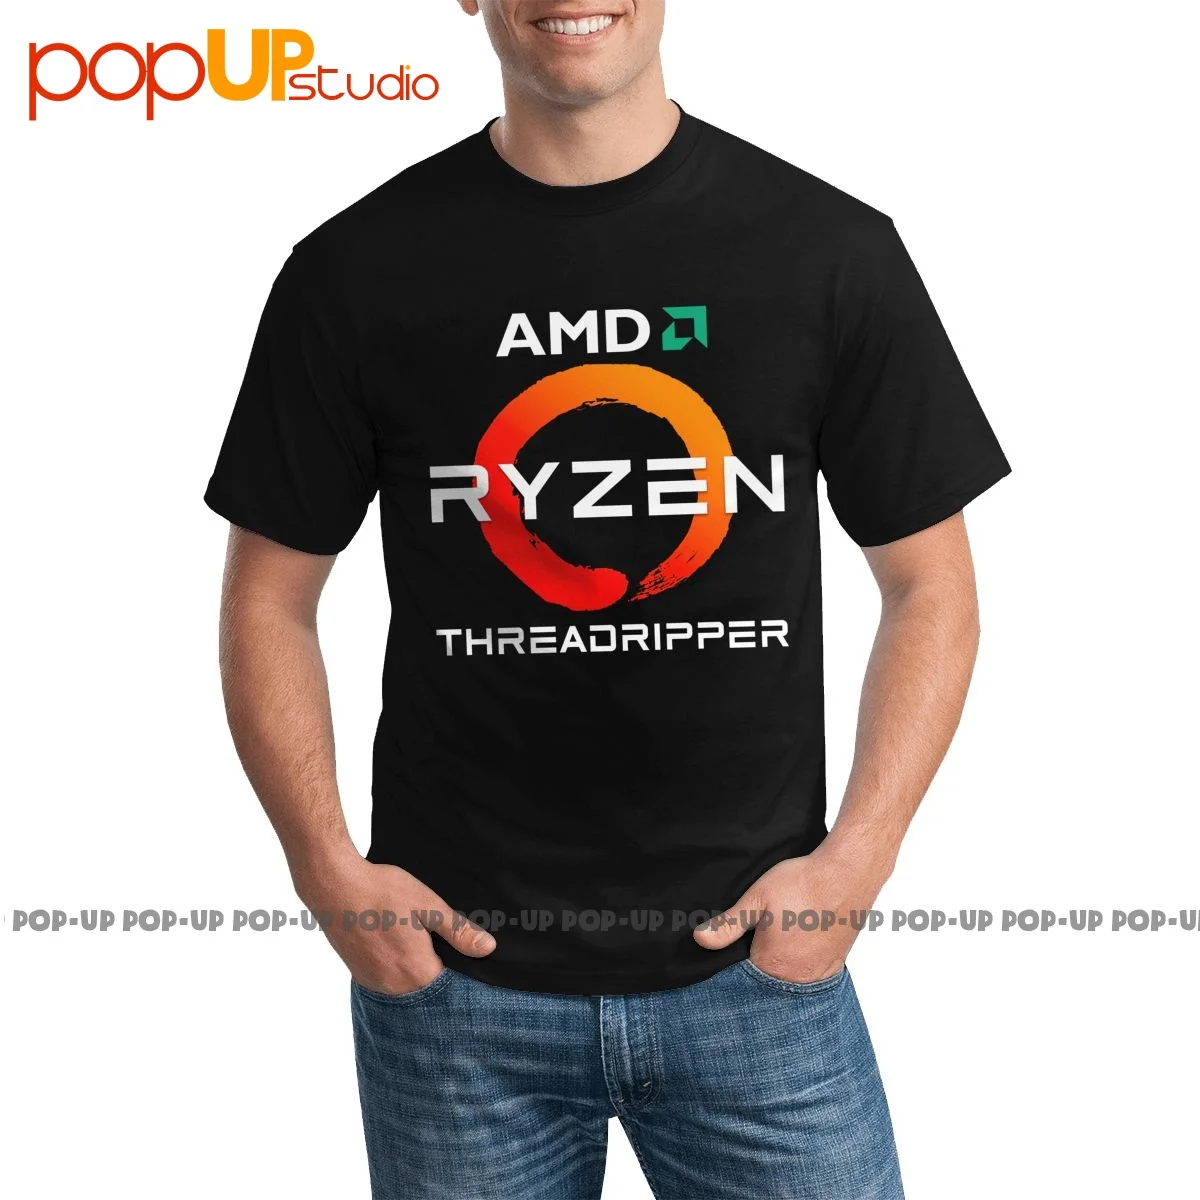 Модная футболка Vtg Amd Ryzen Threadripper с процессором стильная высокого качества |